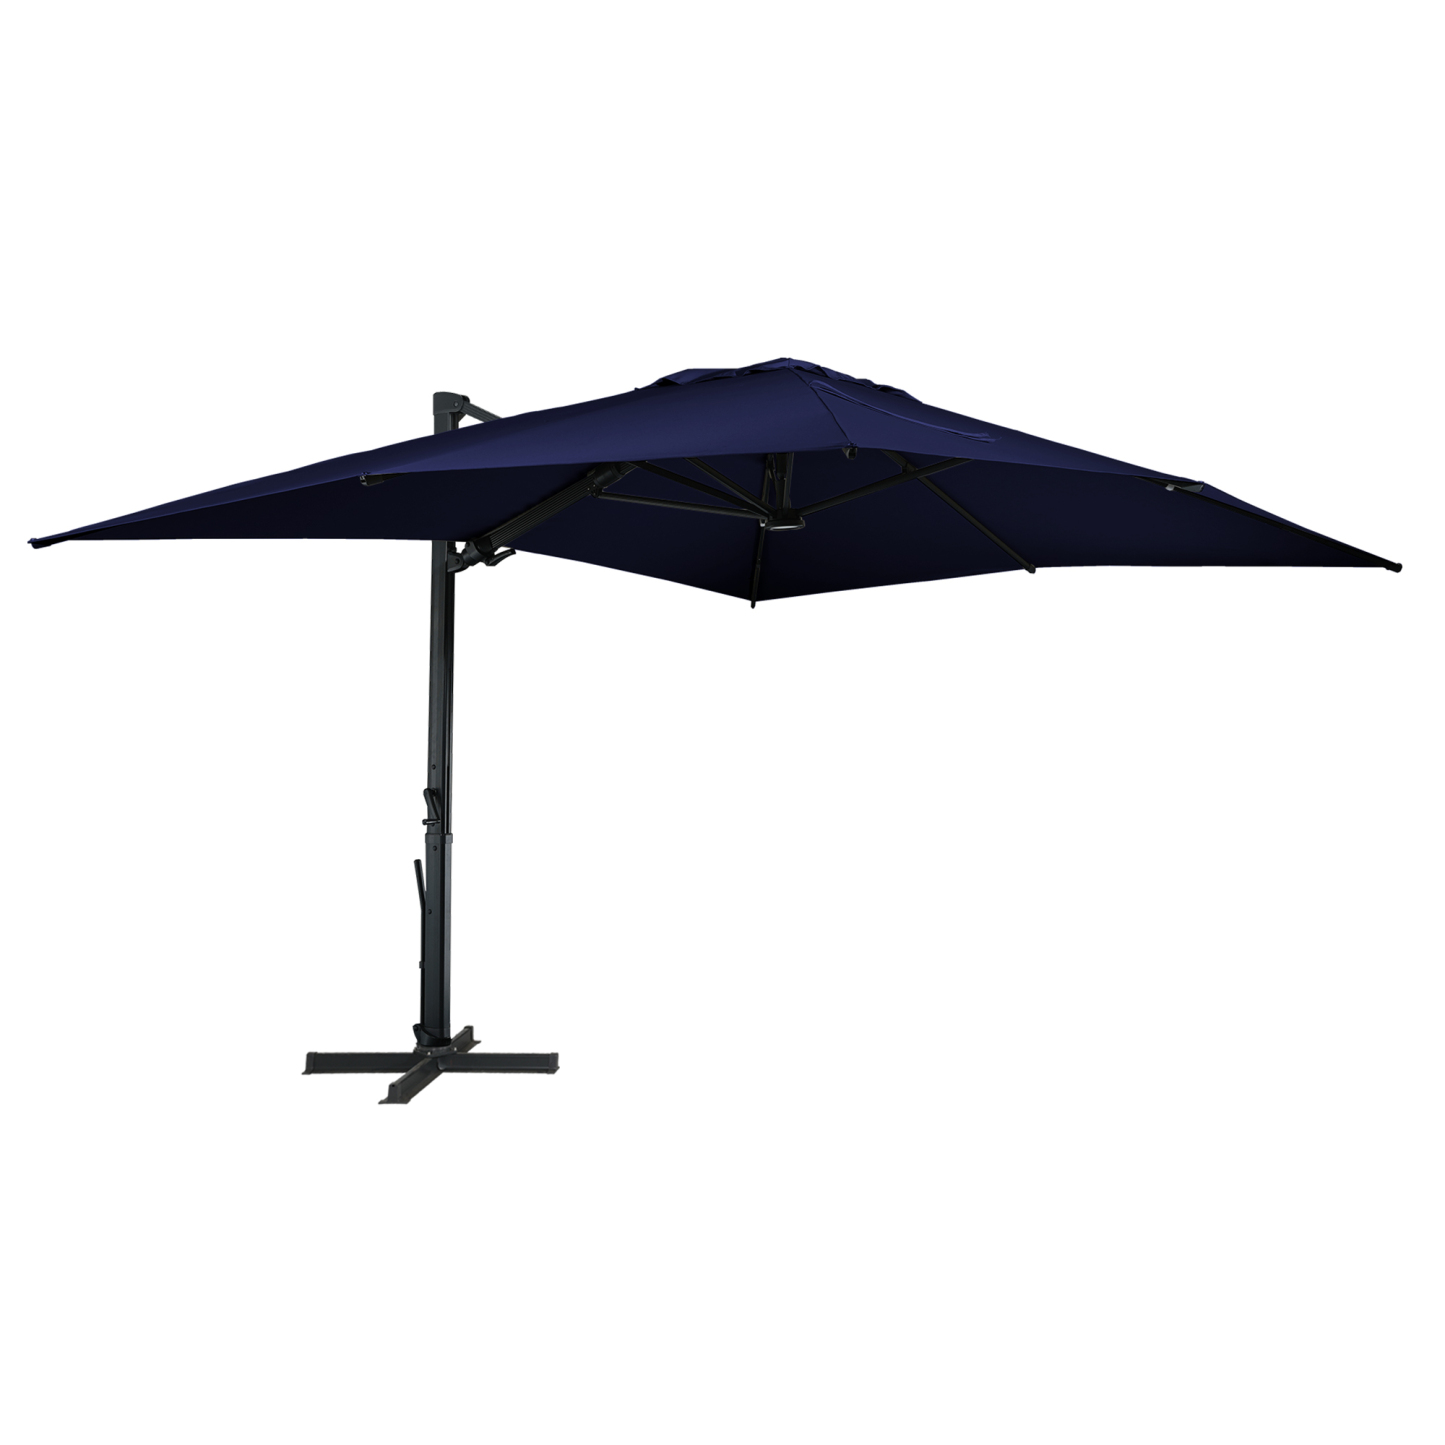 13ft Solar-Powered Cantilever Outdoor Patio Umbrella